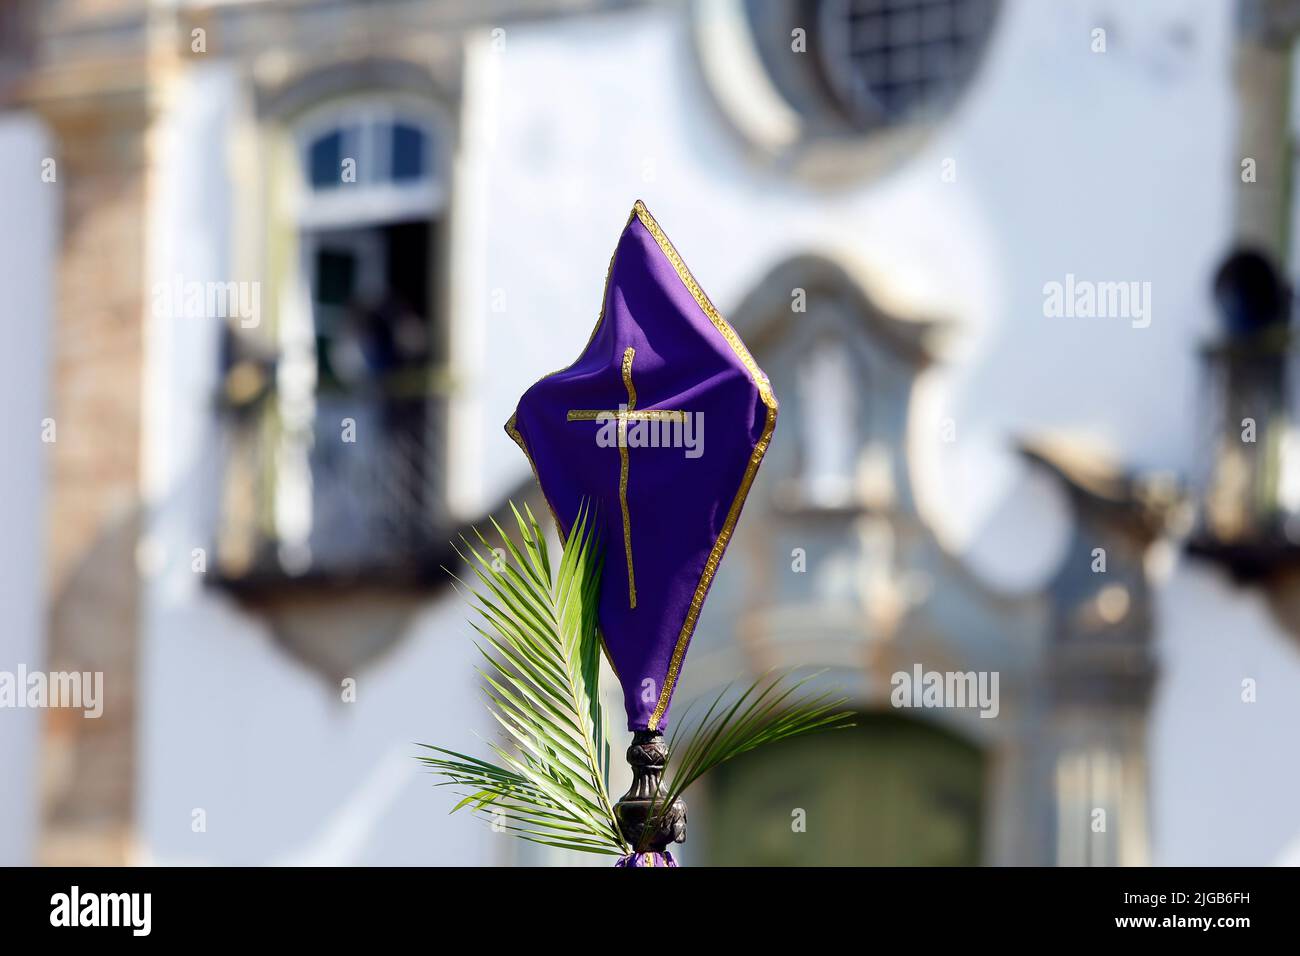 Settimana Santa. Croce coperta di tessuto viola durante la processione. Celebrazione cattolica tradizionale Domenica delle Palme. Fede cristiana. Simbolo religioso. Foto Stock